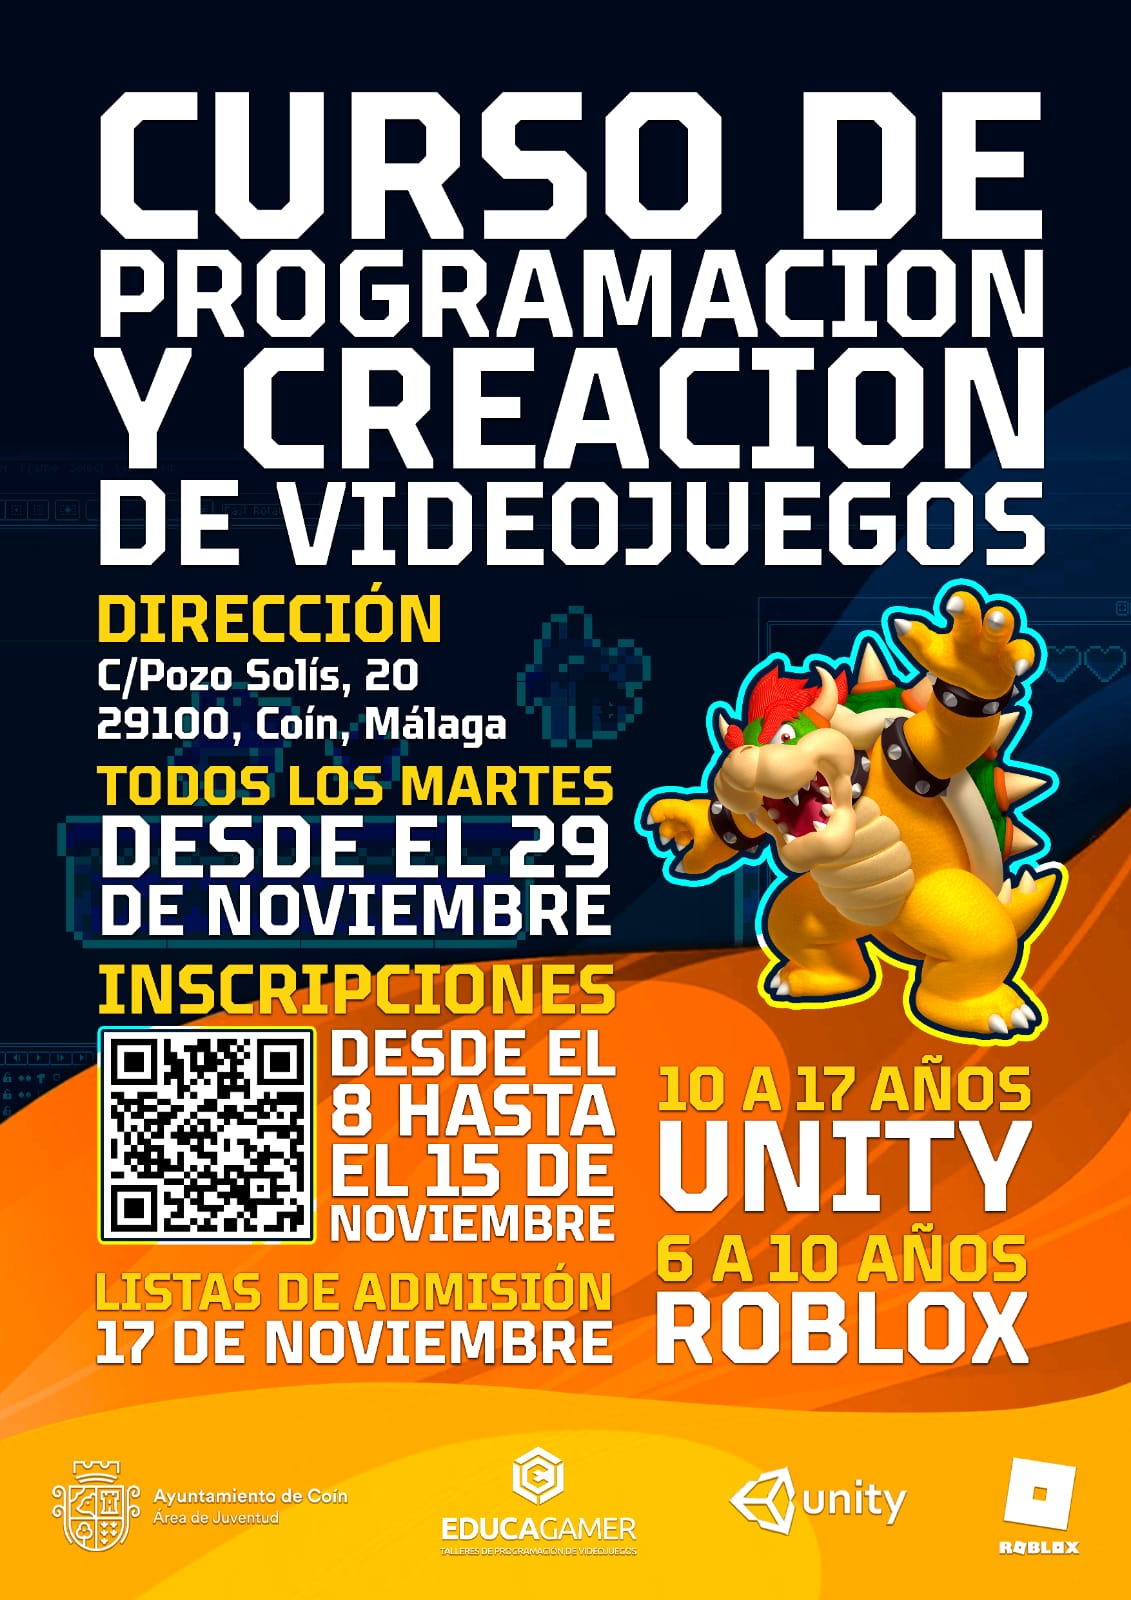 https://coin.es/el-ayuntamiento-ofrece-un-curso-de-programacion-y-creacion-de-videojuegos/whatsapp-image-2022-11-08-at-4-00-26-pm/